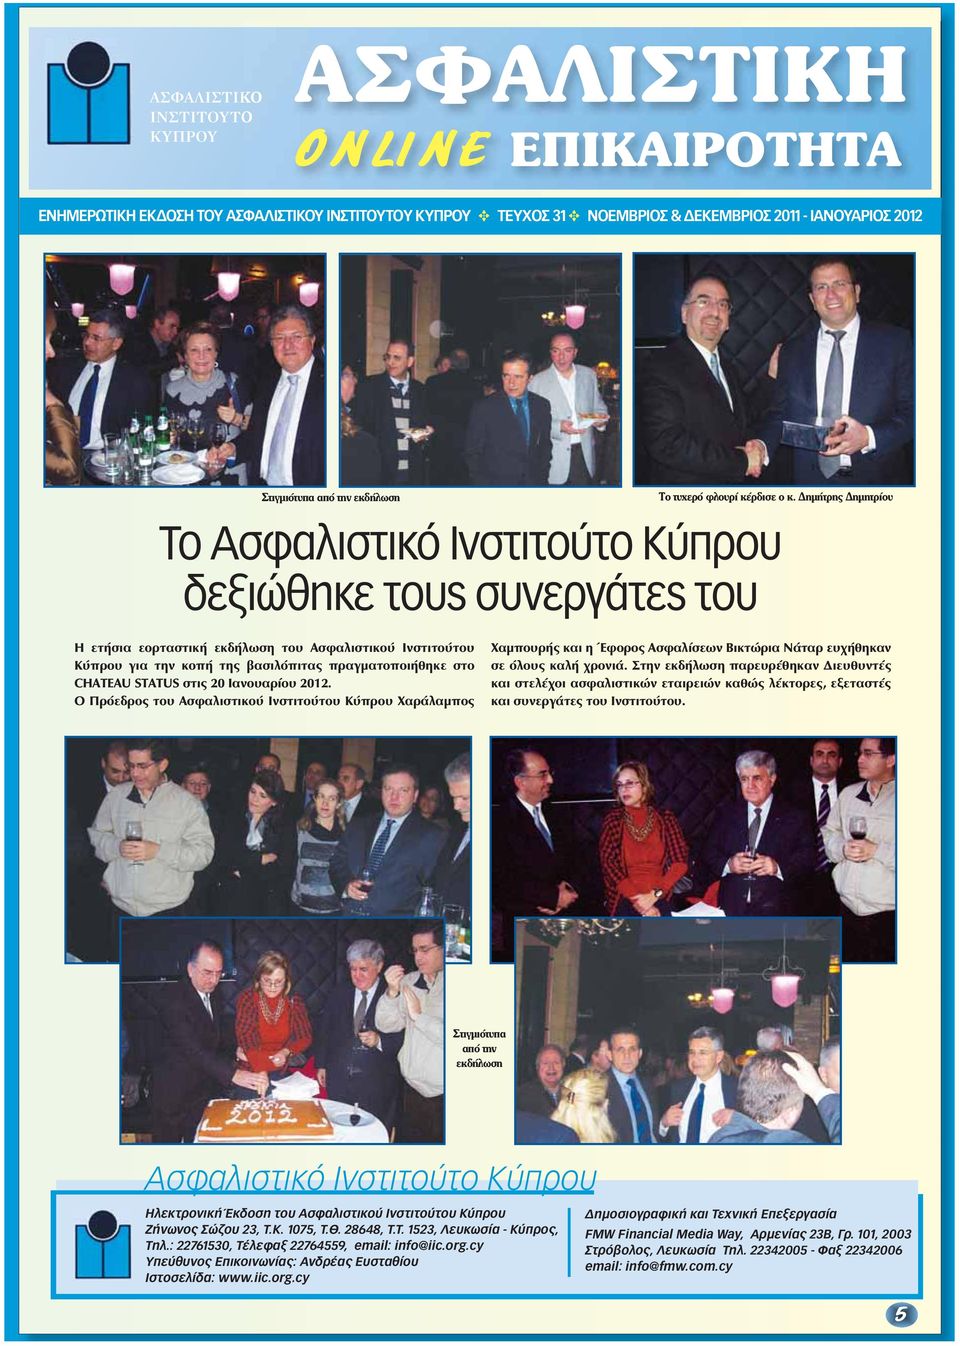 2012. Ο Πρόεδρος του Ασφαλιστικού Ινστιτούτου Κύπρου Χαράλαμπος Χαμπουρής και η Έφορος Ασφαλίσεων Βικτώρια Νάταρ ευχήθηκαν σε όλους καλή χρονιά.